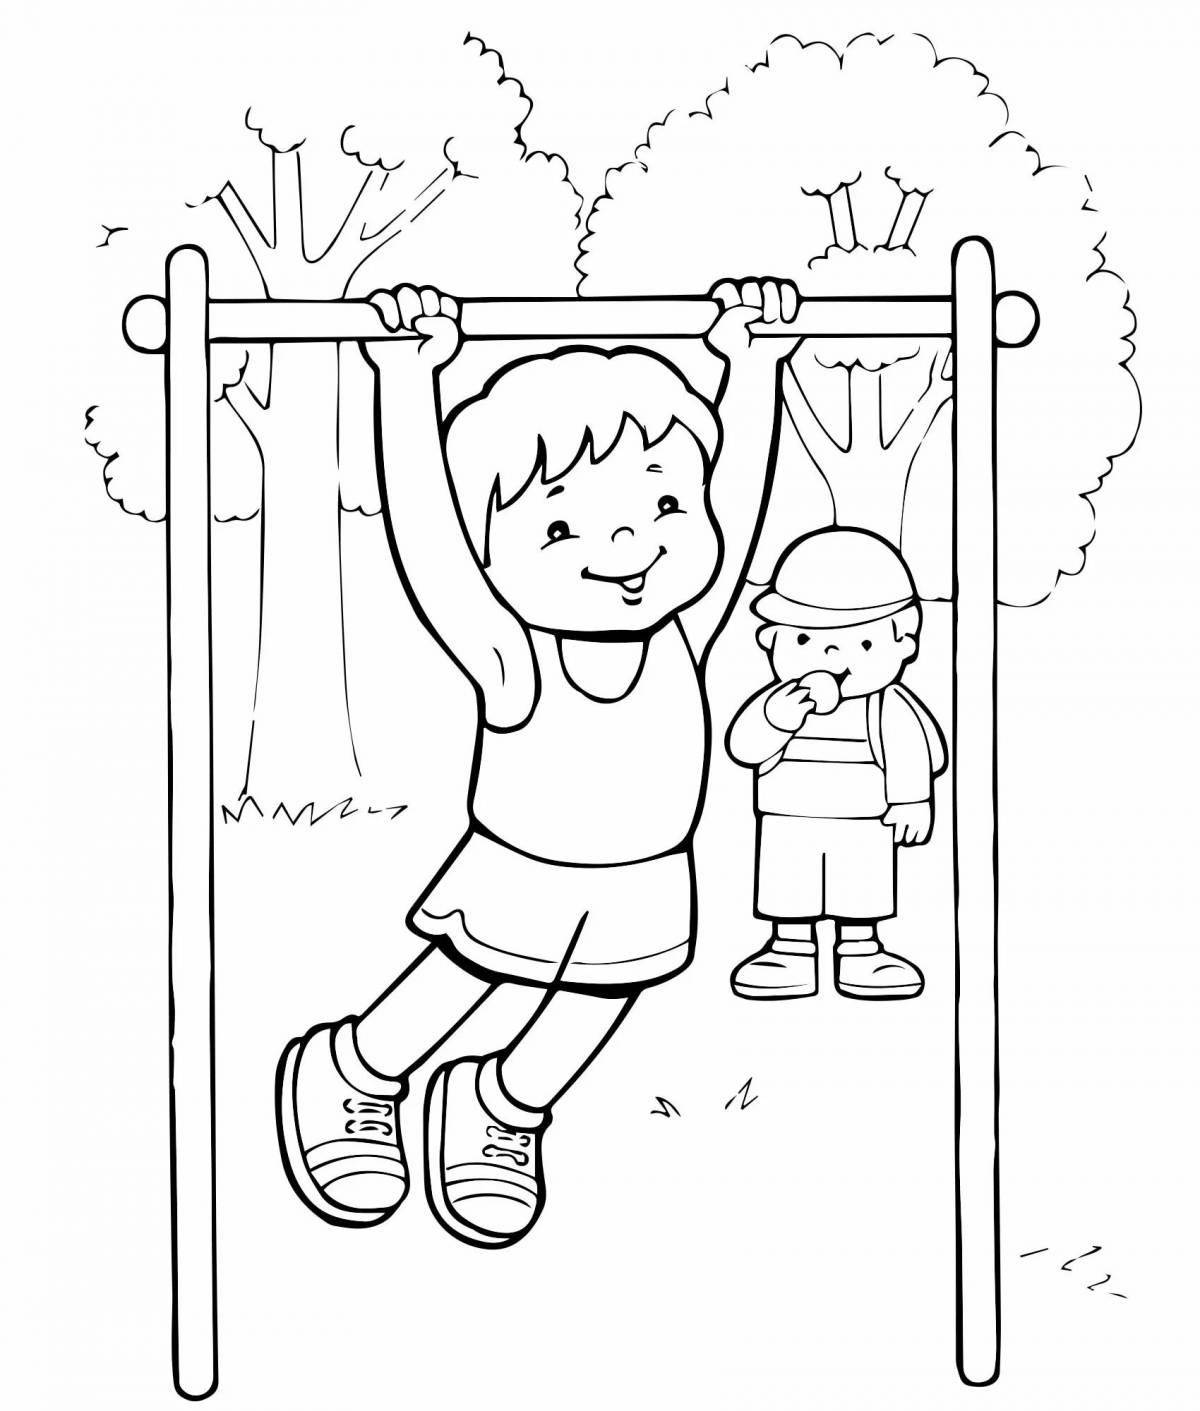 Exercise for children #7